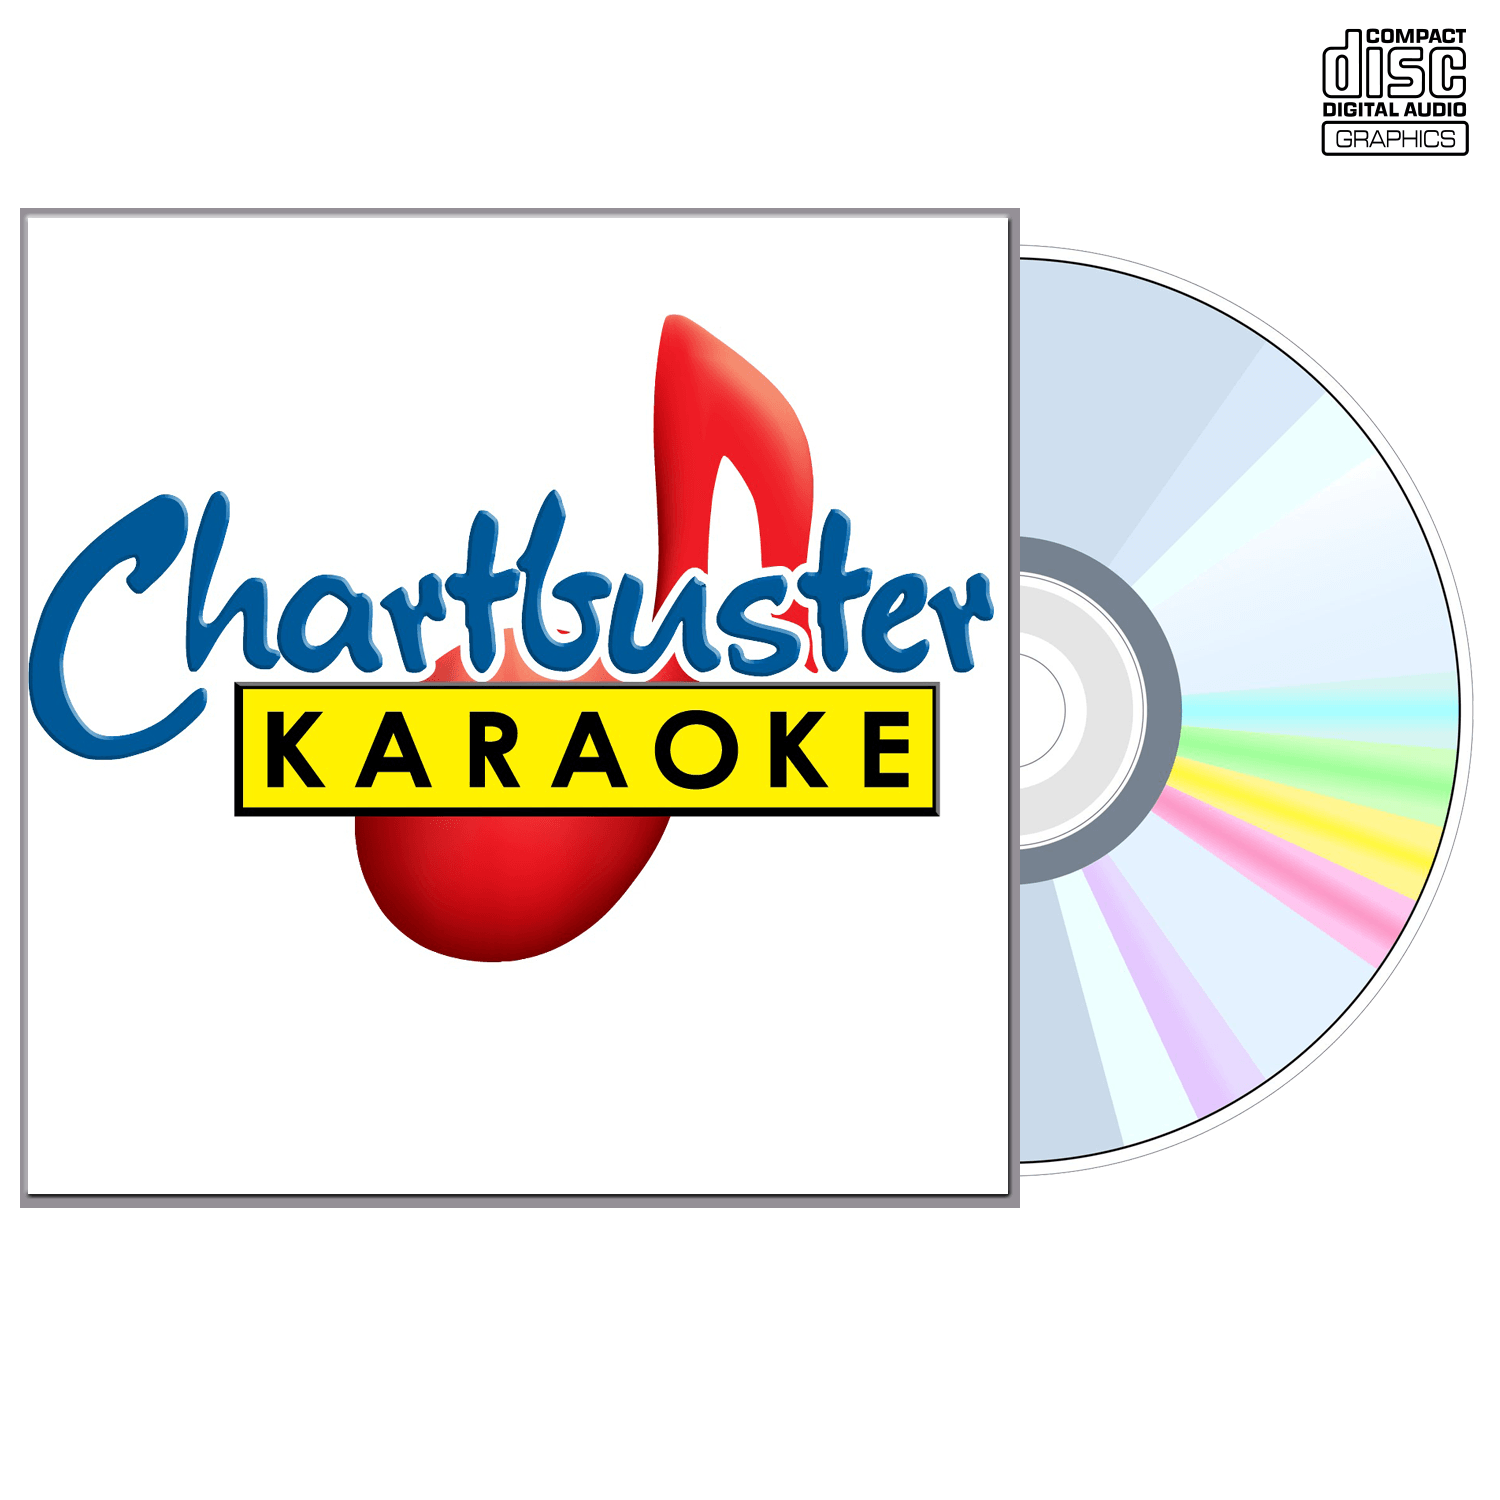 Neal Mccoy Vol 2 - CD+G - Chartbuster Karaoke - Karaoke Home Entertainment